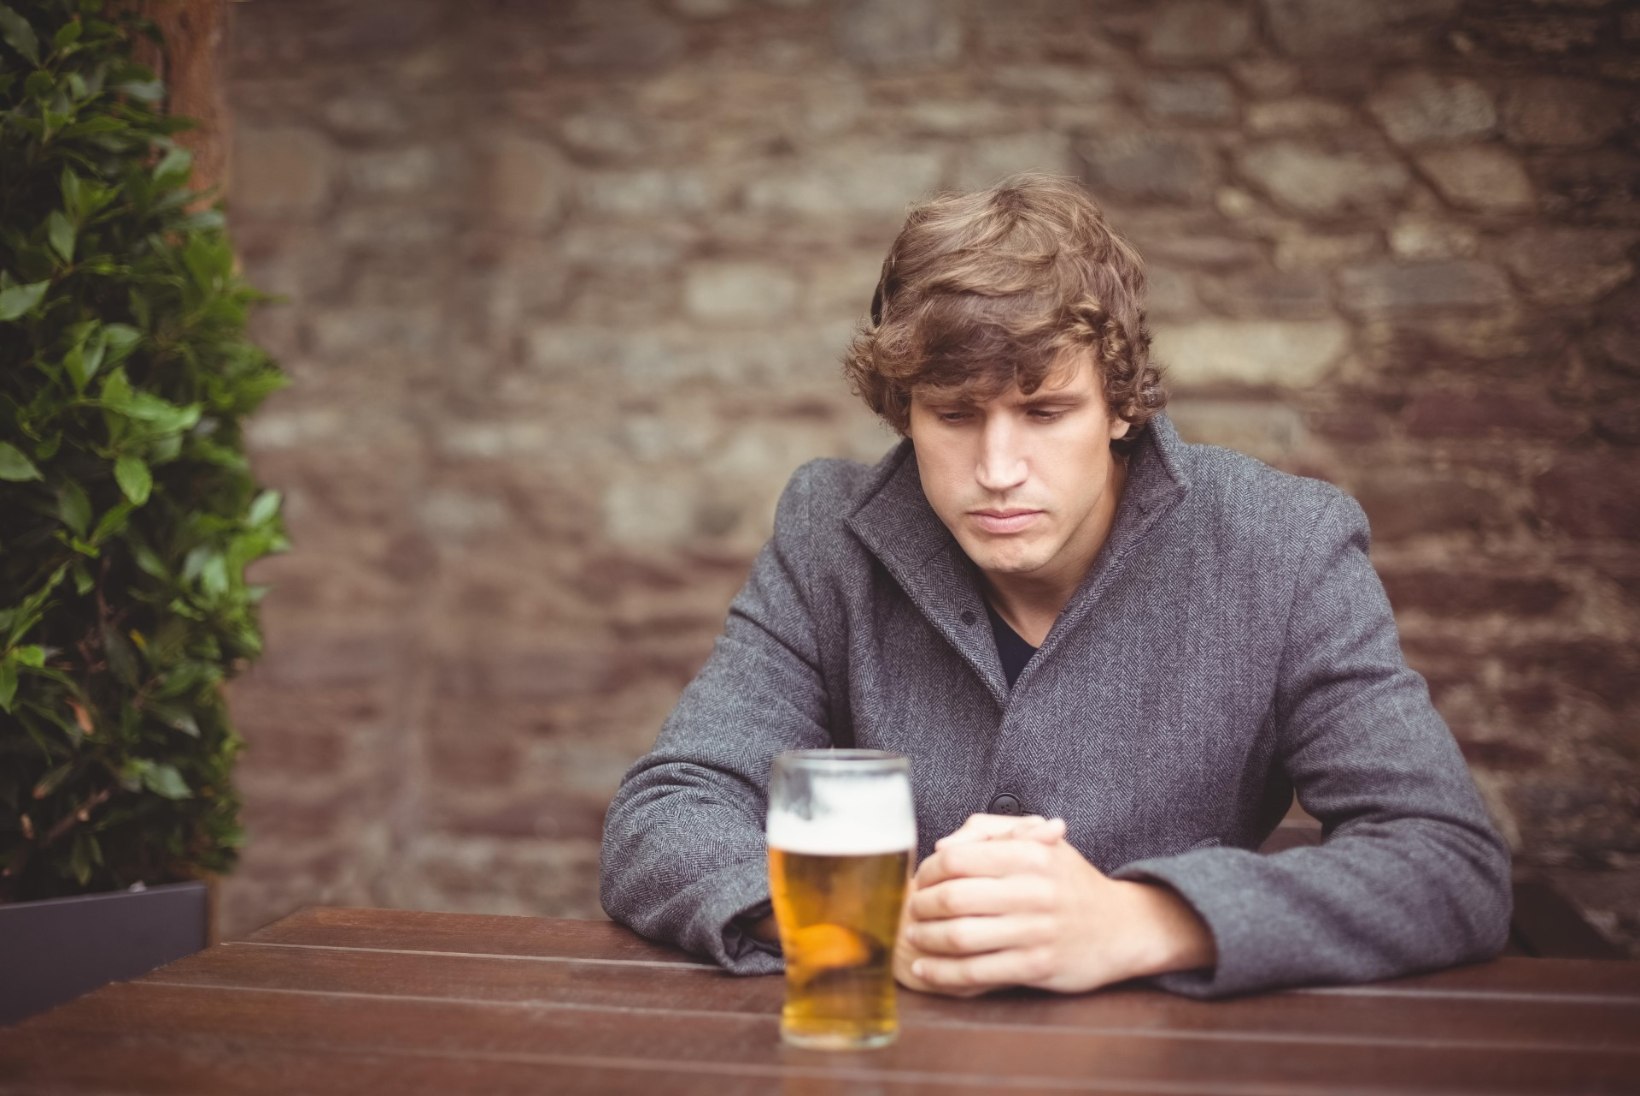 HALB UUDIS: isegi üks õlu päevas võib suurendada vähiriski